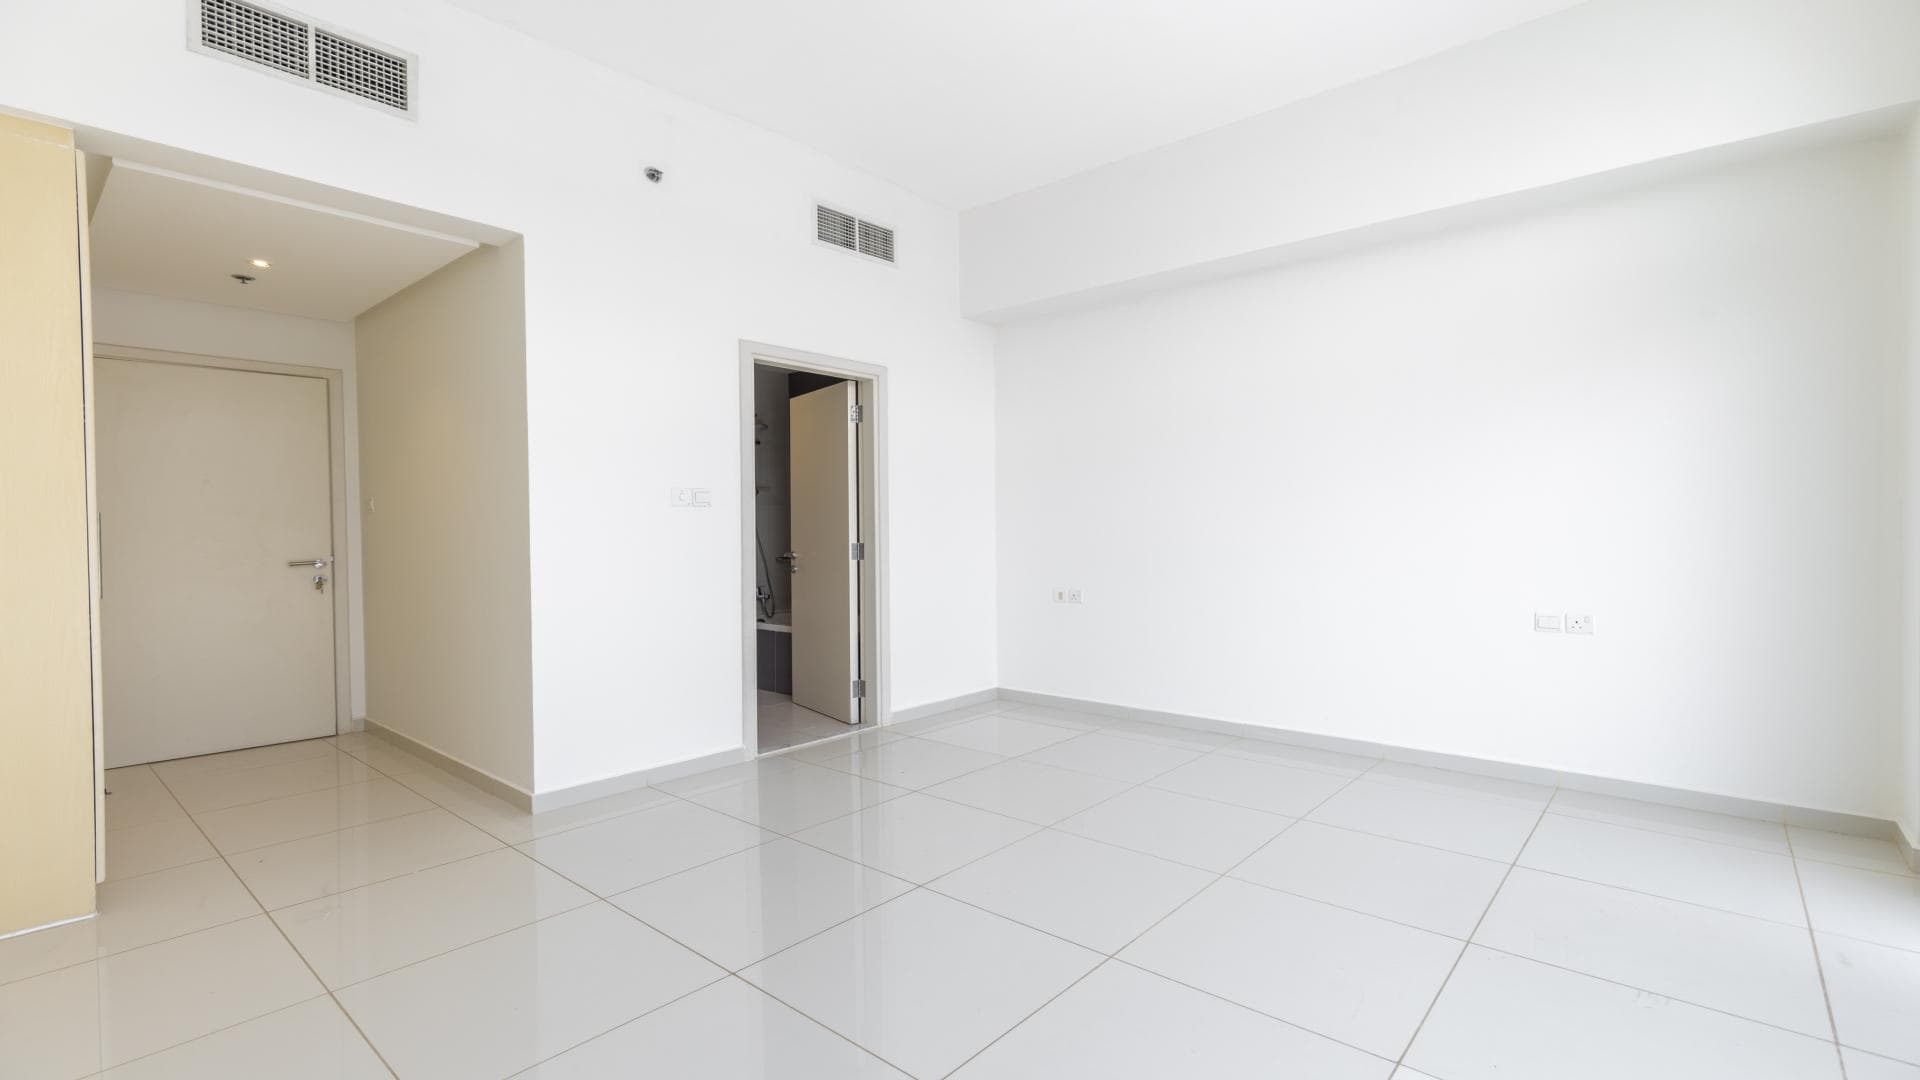 2 Bedroom Apartment For Rent Zahra Breeze Apartments 4a Lp37038 2c3c13c63e1f8400.jpg